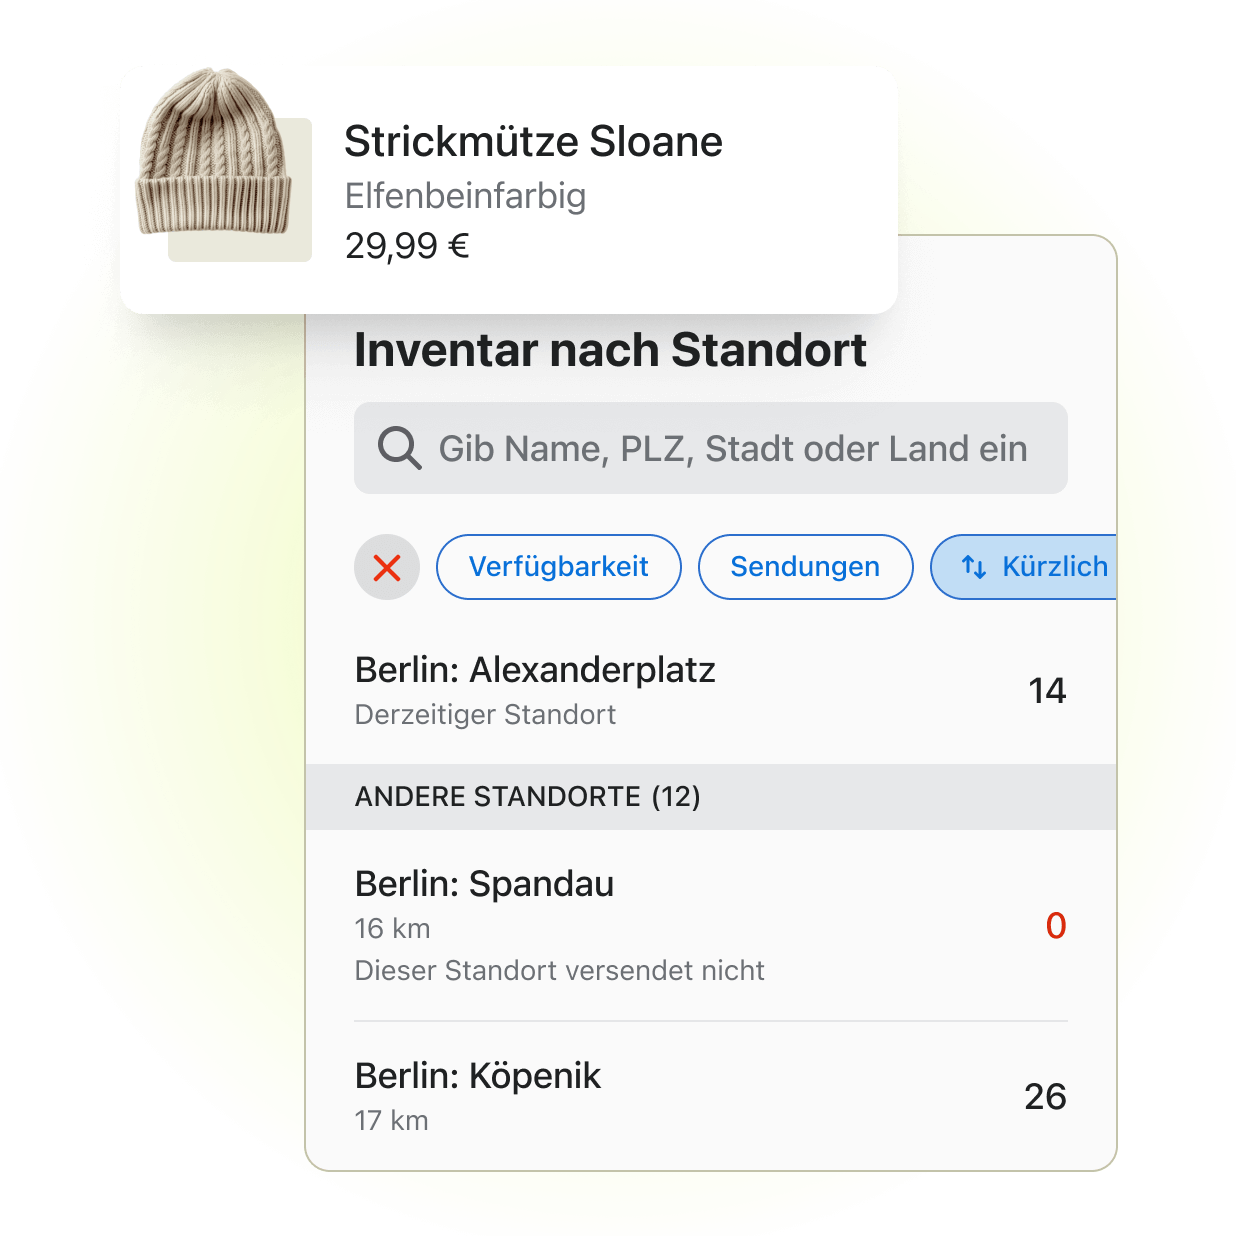 Ein kleiner Schnappschuss des Point-of-Sale-Kanals von Shopify aus dem Adminbereich, der die Inventarmengen an drei verschiedenen Shop-Standorten für ein Produkt namens "Strickmütze Sloane" anzeigt.